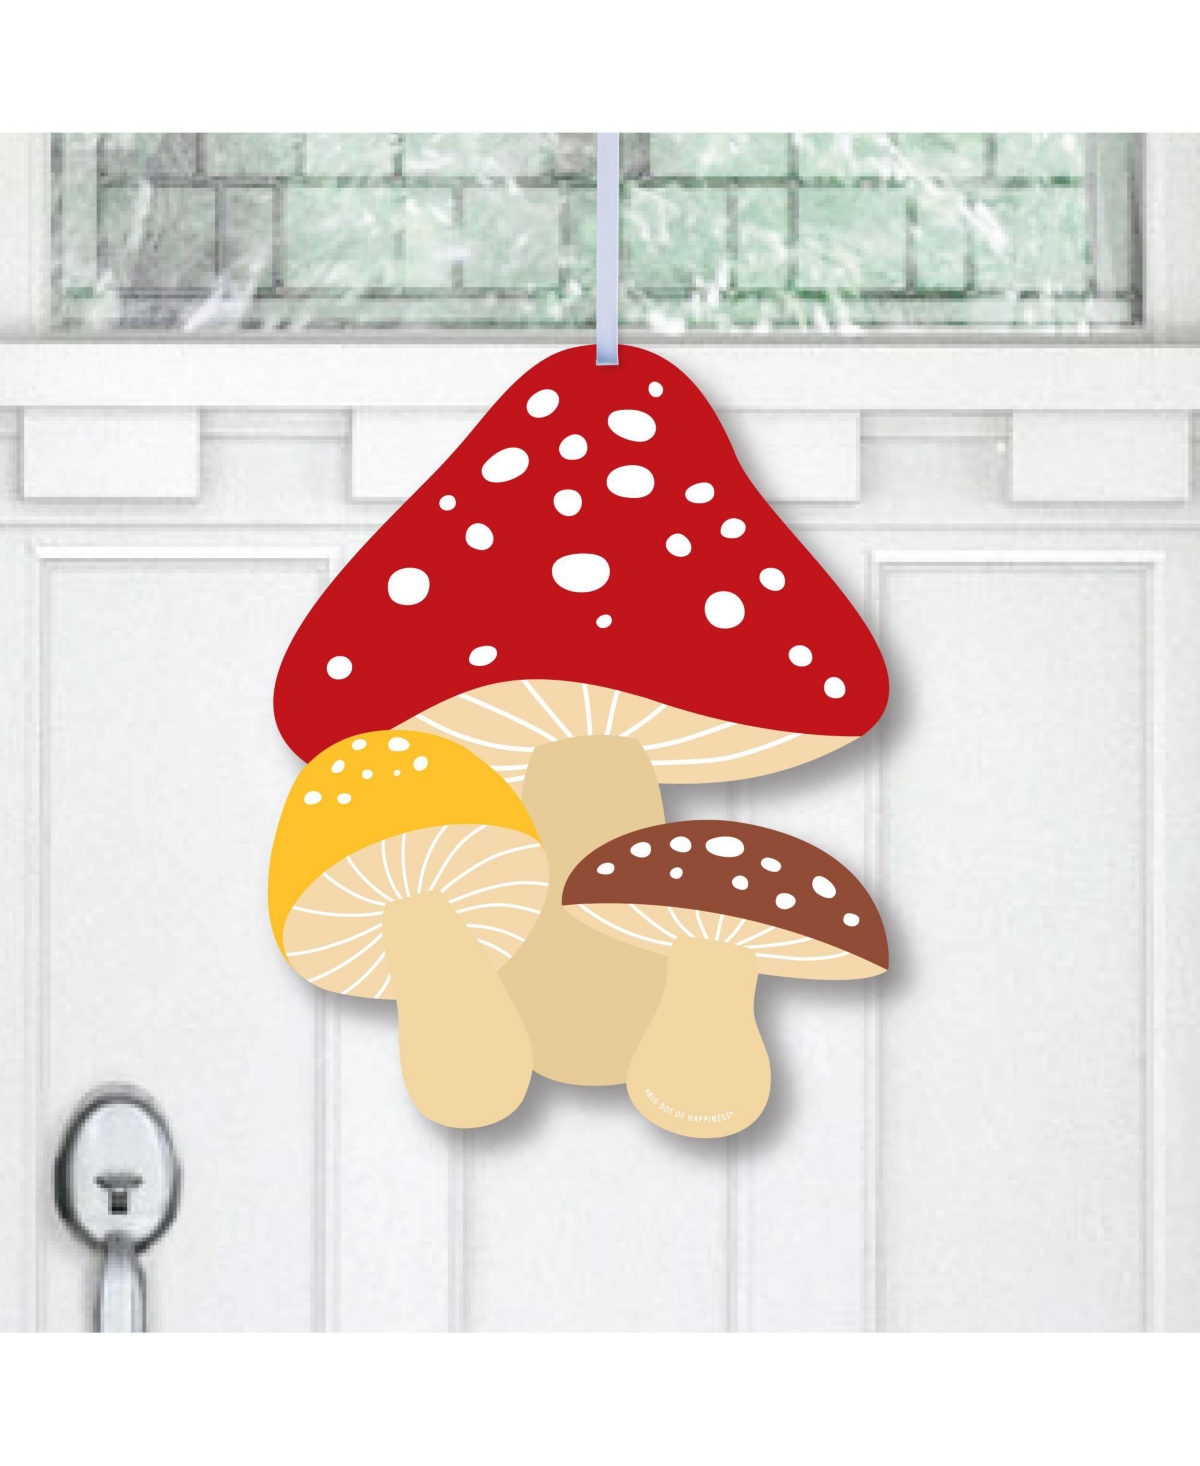 Wild Mushrooms - Red Toadstool Party Outdoor Front Door Decor 1 Piece Sign